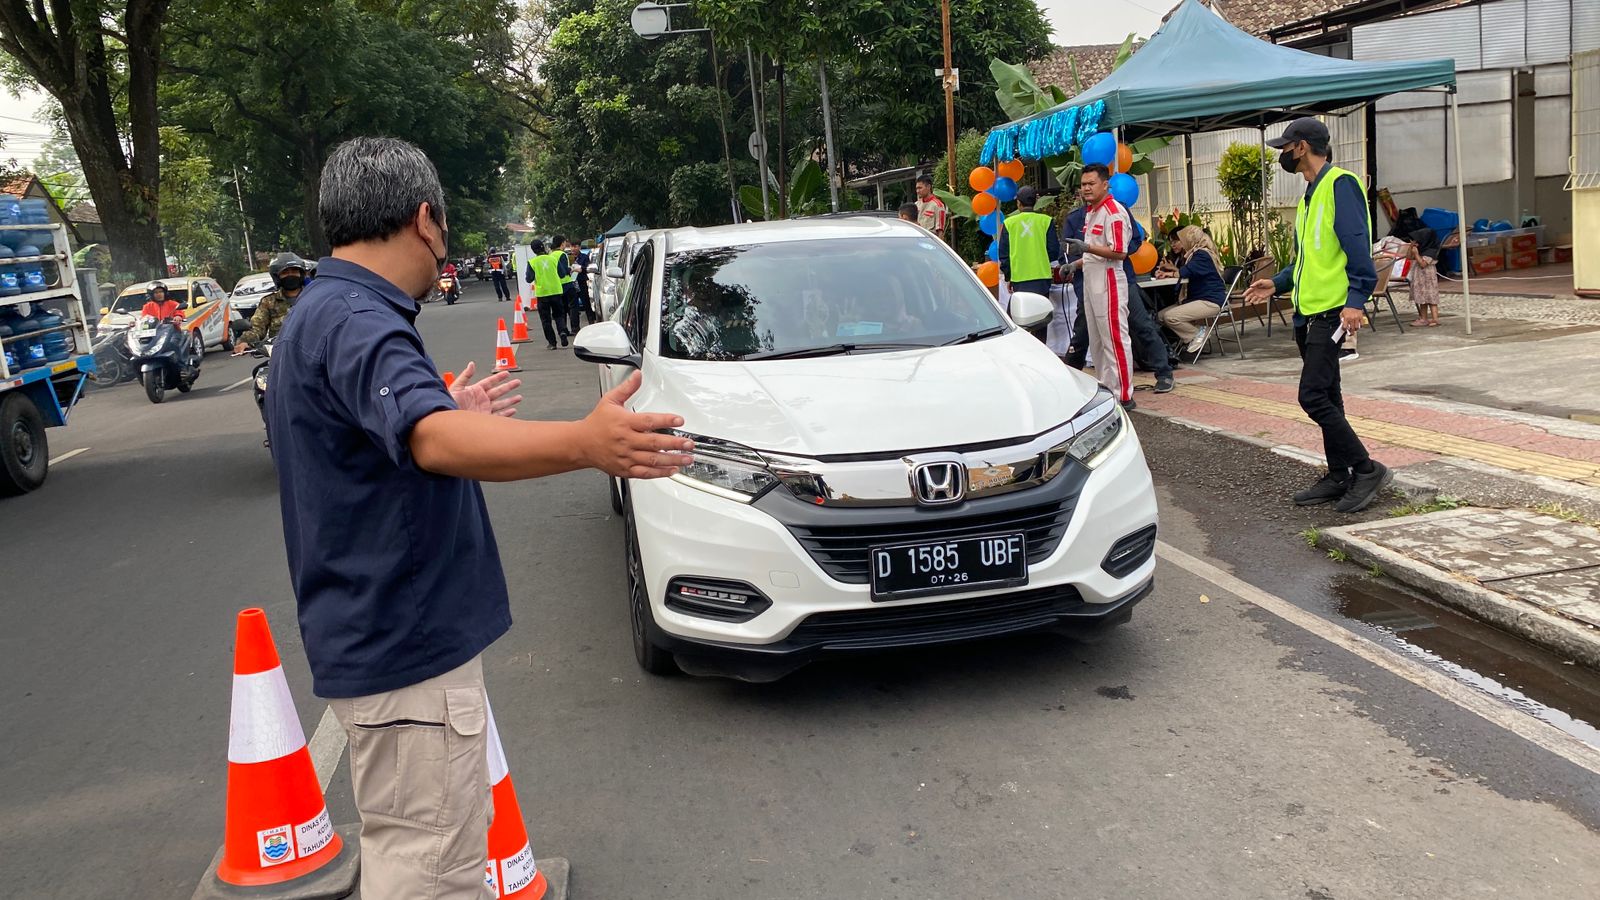 Petugas mengarahkan pengendara untuk mengikuti uji emisi di depan Gedung 4 Kota Cimahi, Selasa (6/6).